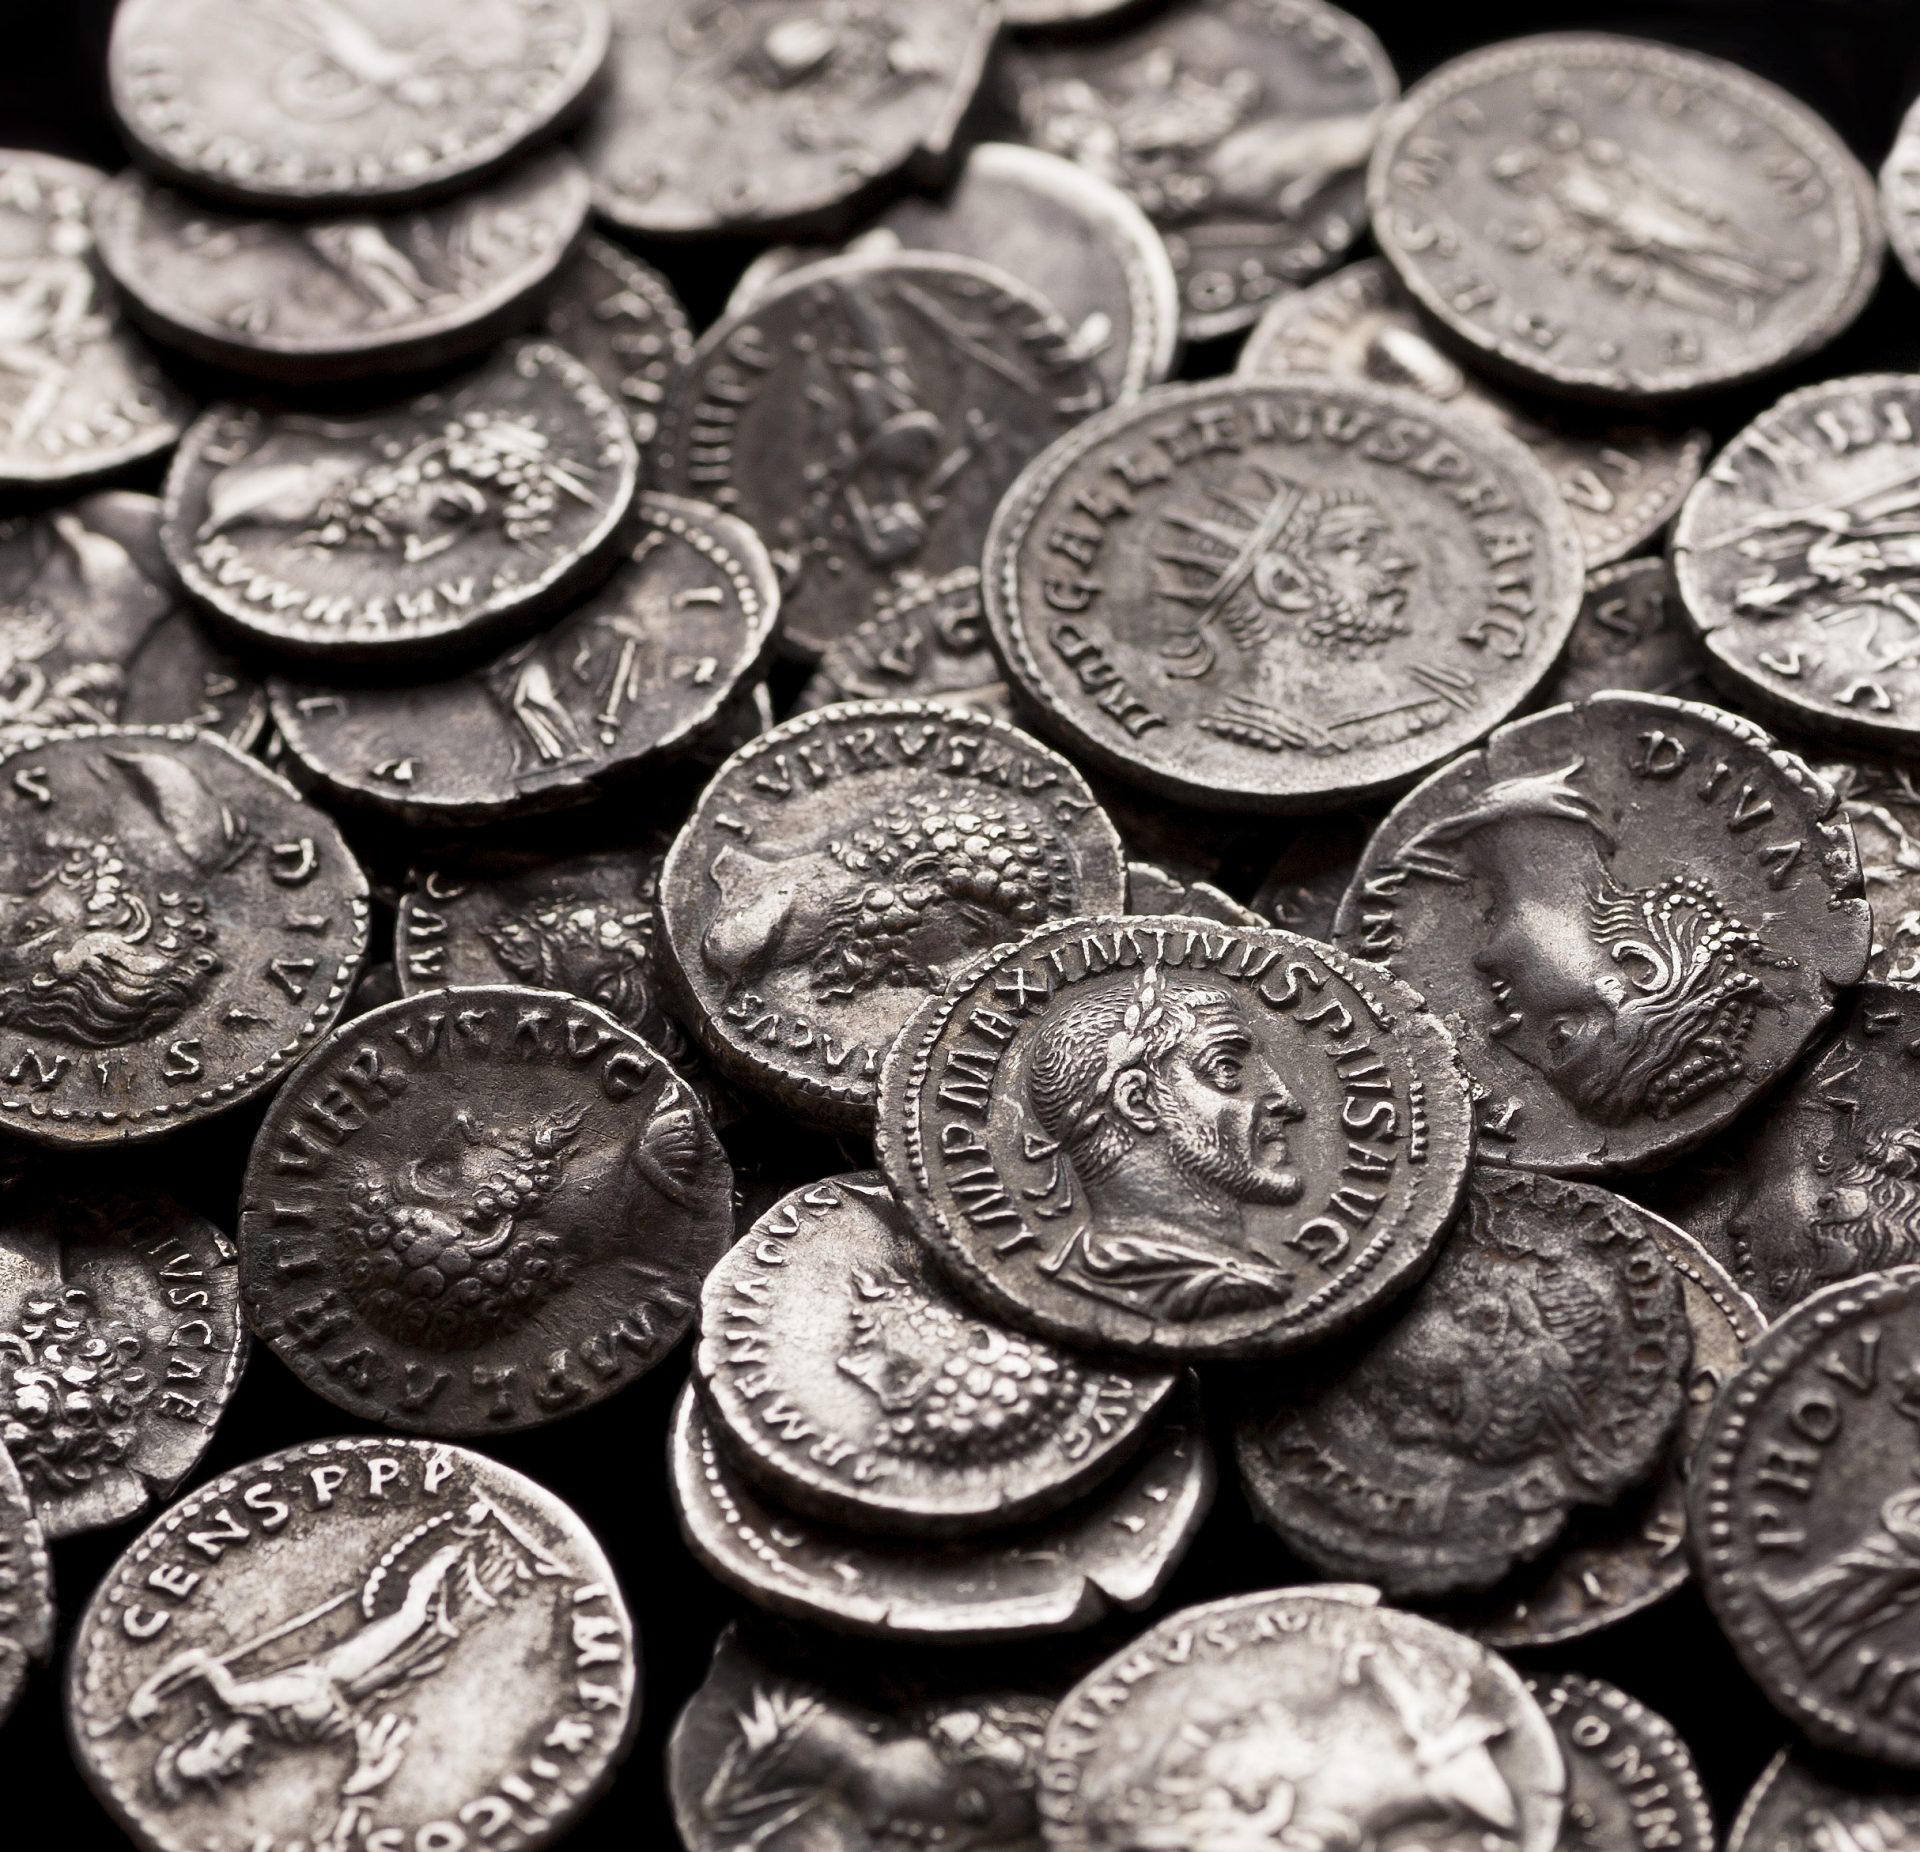 Des monnaies romaines trouvées par des archéologues proches de